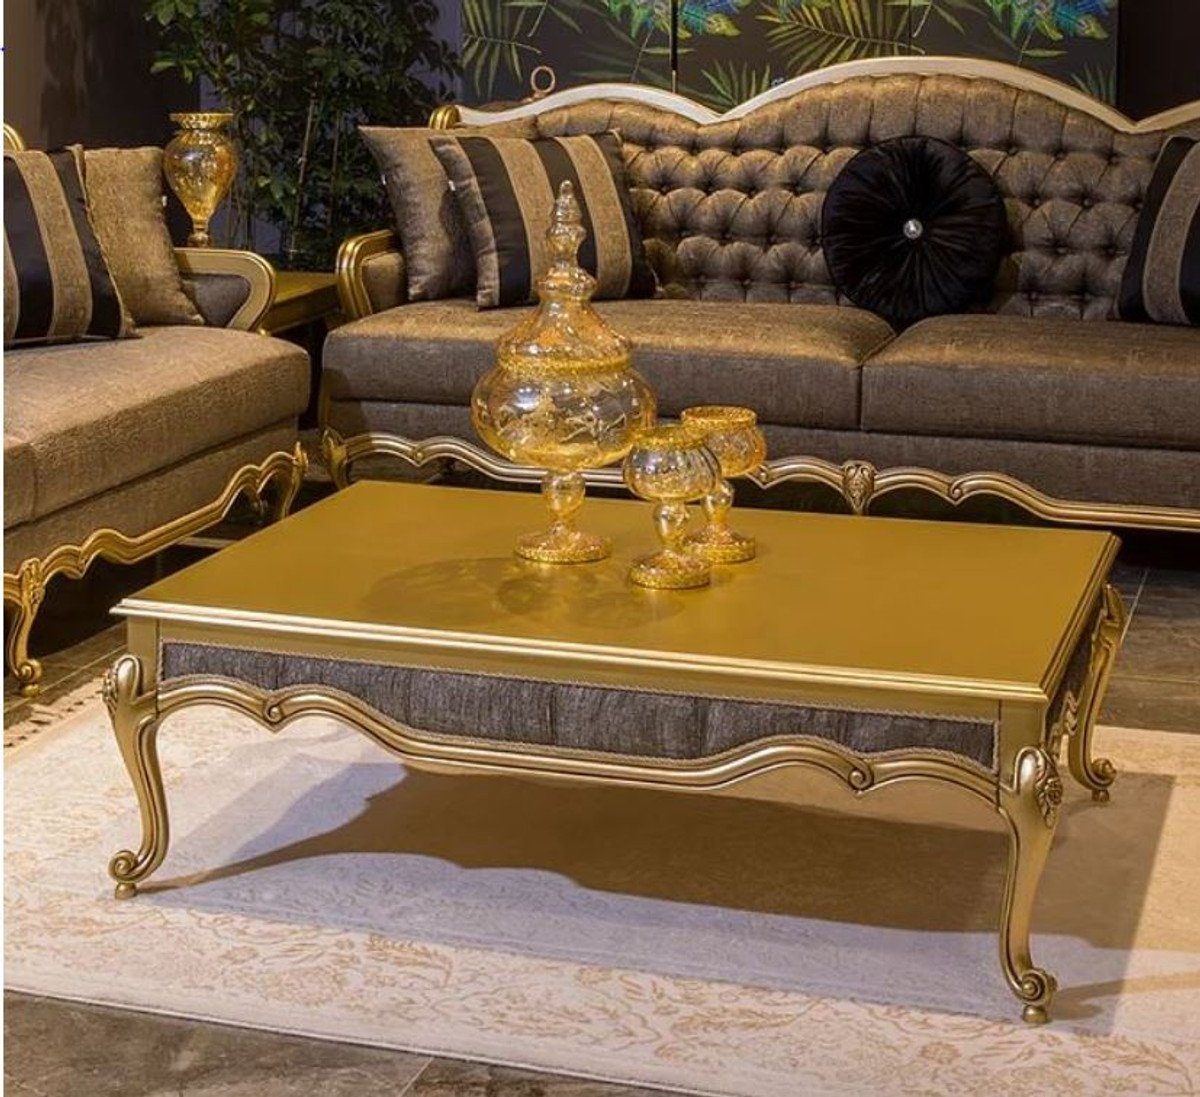 Casa Padrino Couchtisch Luxus Barock Couchtisch Gold / Grau 126 x 91 x H. 42 cm - Edler Massivholz Wohnzimmertisch im Barockstil - Barock Möbel